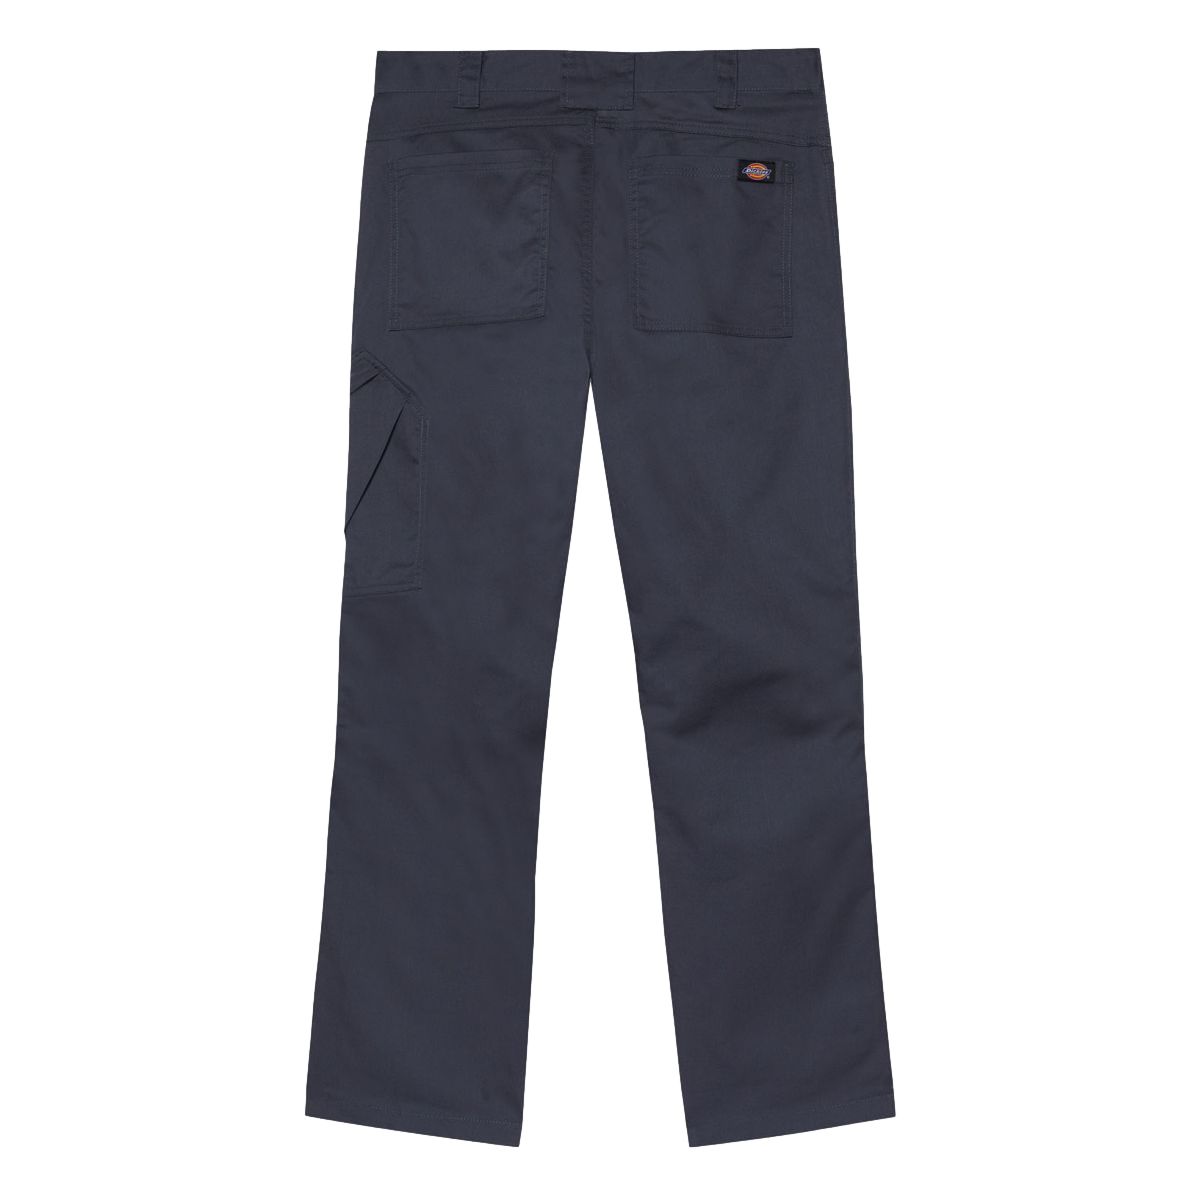 Pantalon de travail Action Flex gris - Dickies - Taille 48 2